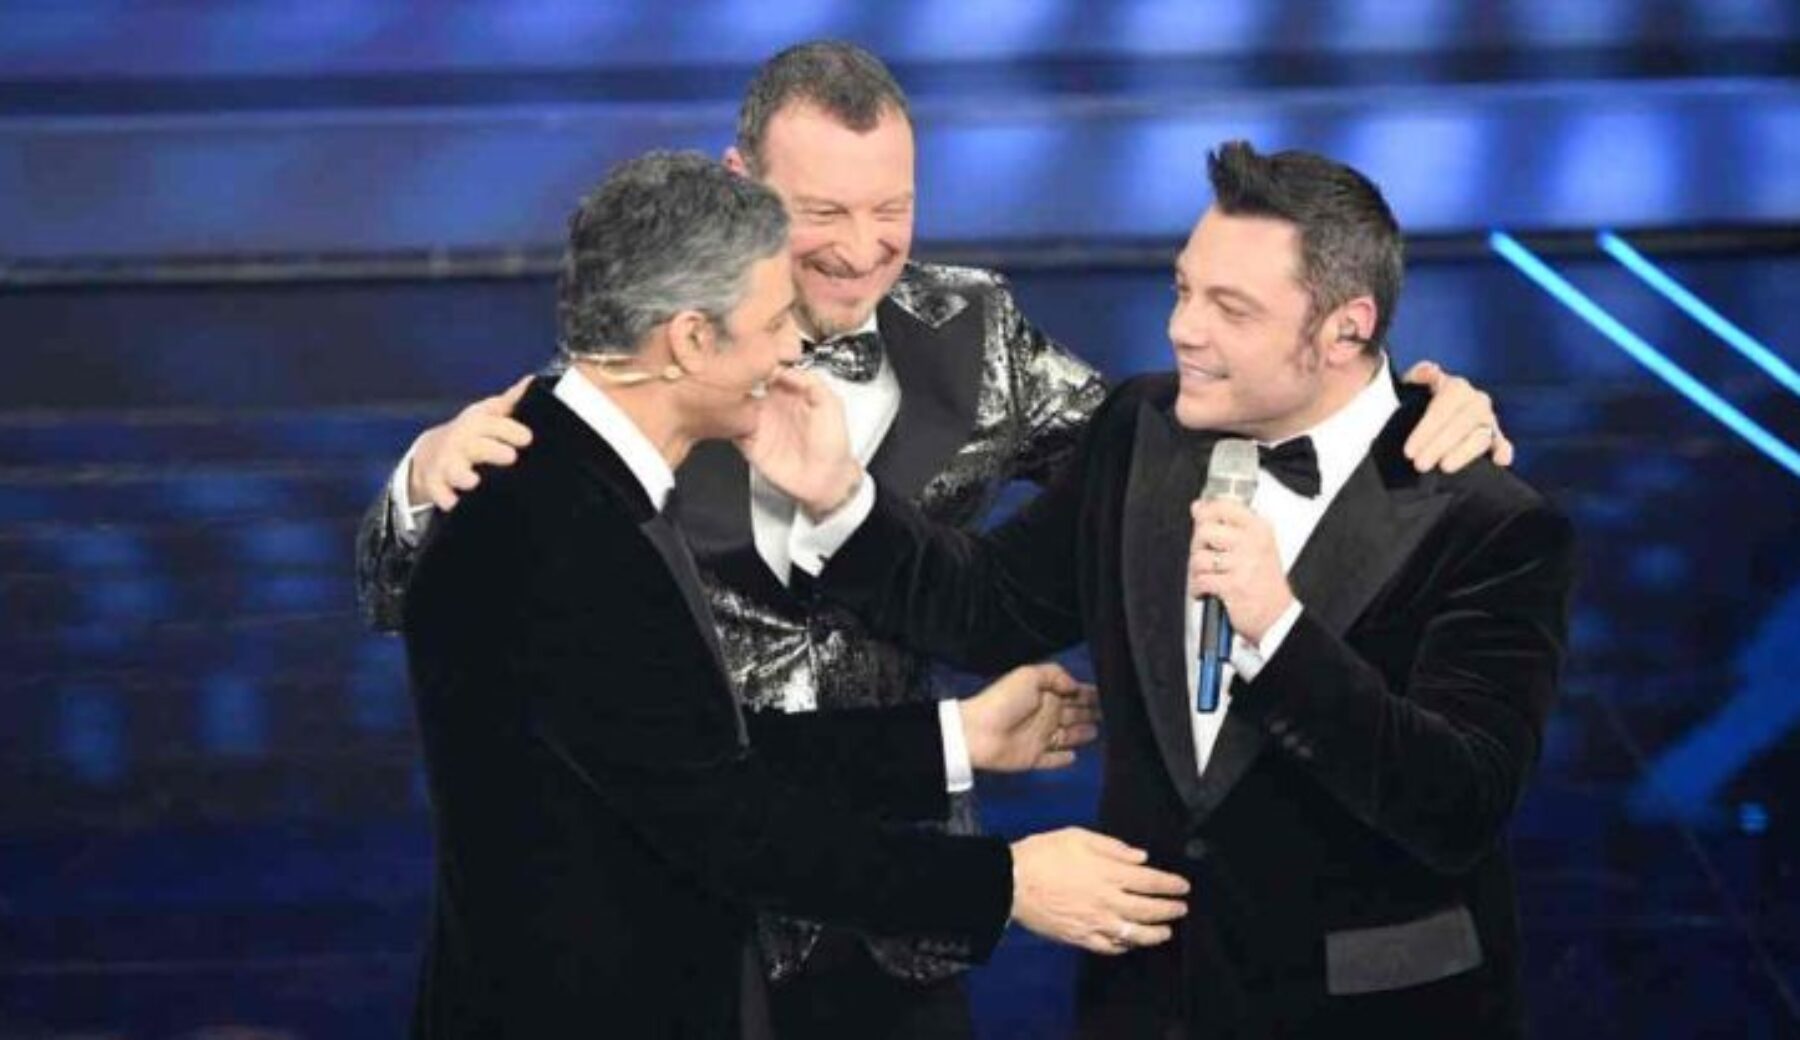 Best of Sanremo 2020, i momenti più discussi e divertenti del Festival visti da Striscia